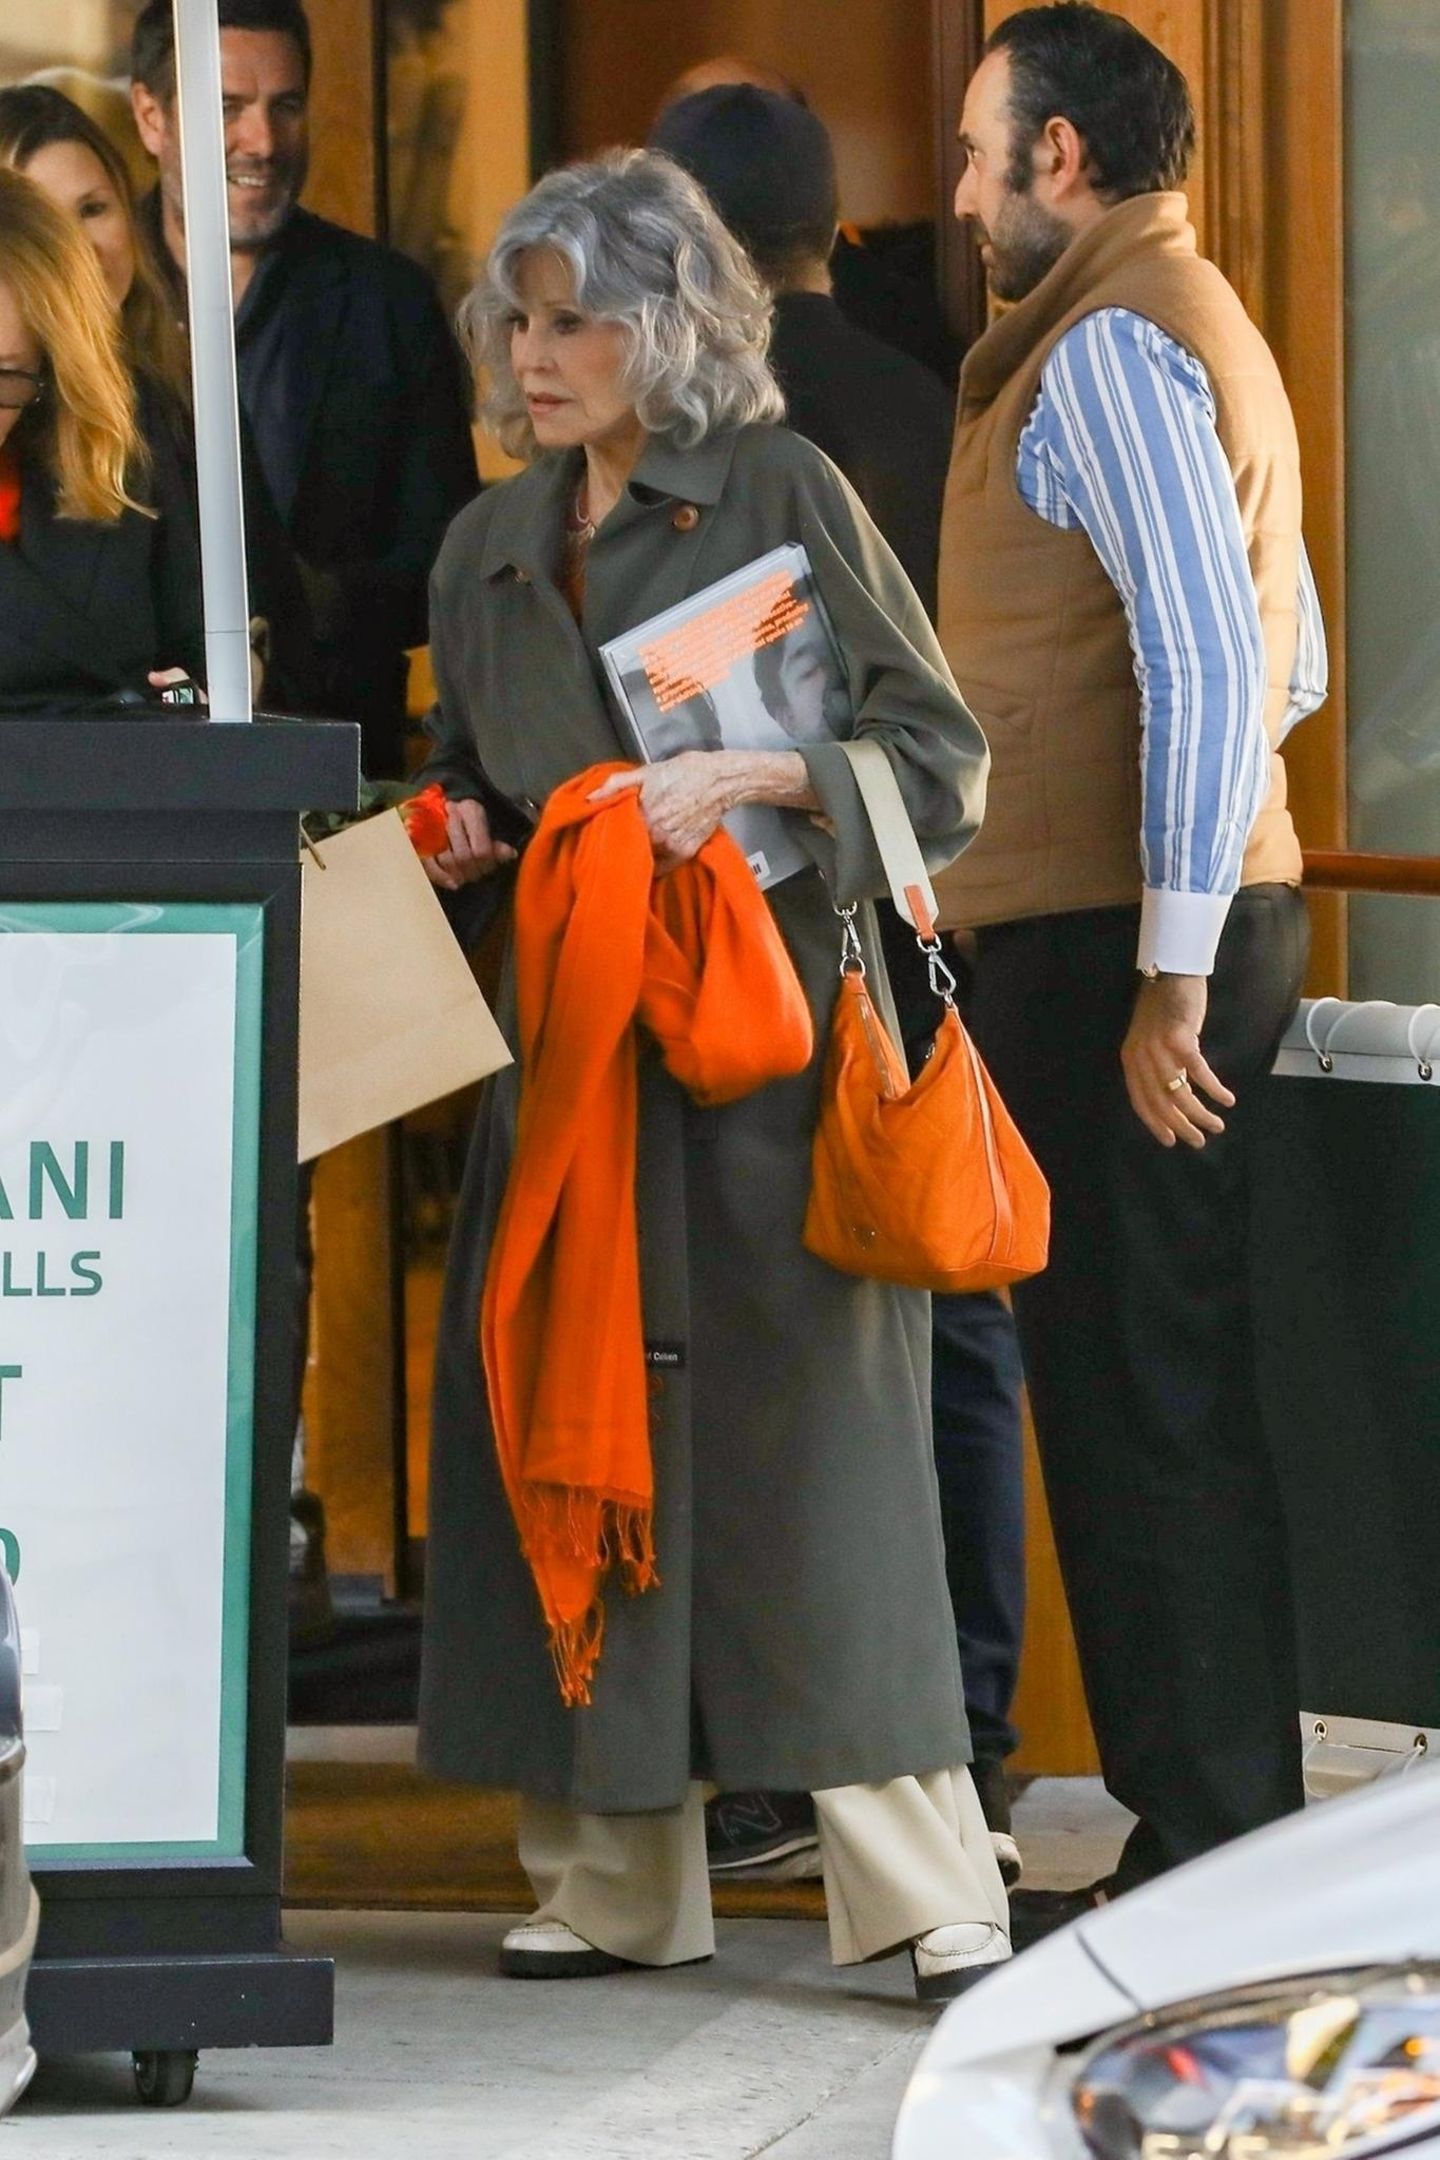 Sie weiß einfach, wie es funktioniert! Jane Fonda kombiniert einen khakifarbenen Trenchcoat zu knalligen orangen Accessoires und beweist dadurch ihr fantastisches Gespür für Mode und Farbkombinationen.